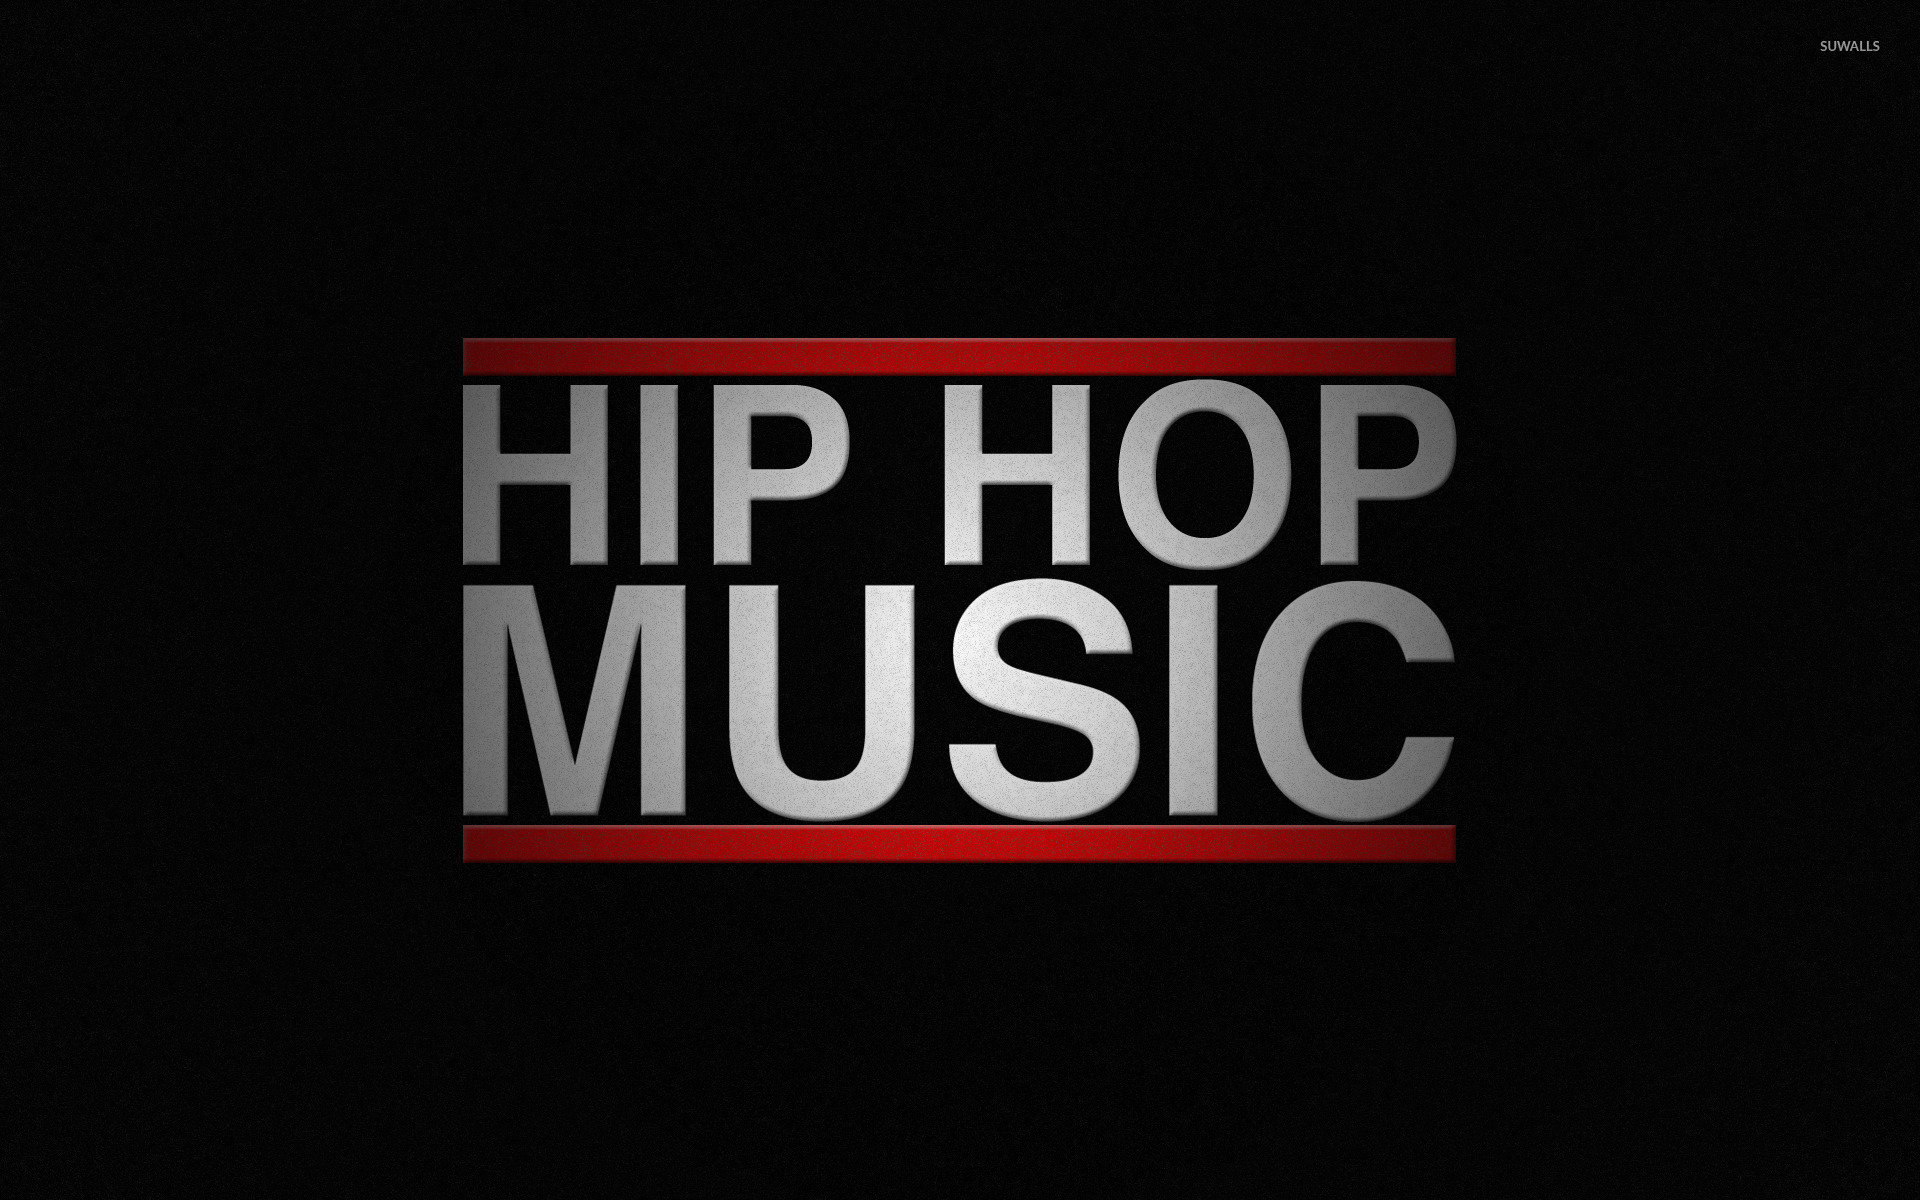 Hip Hop music wallpaper - Music